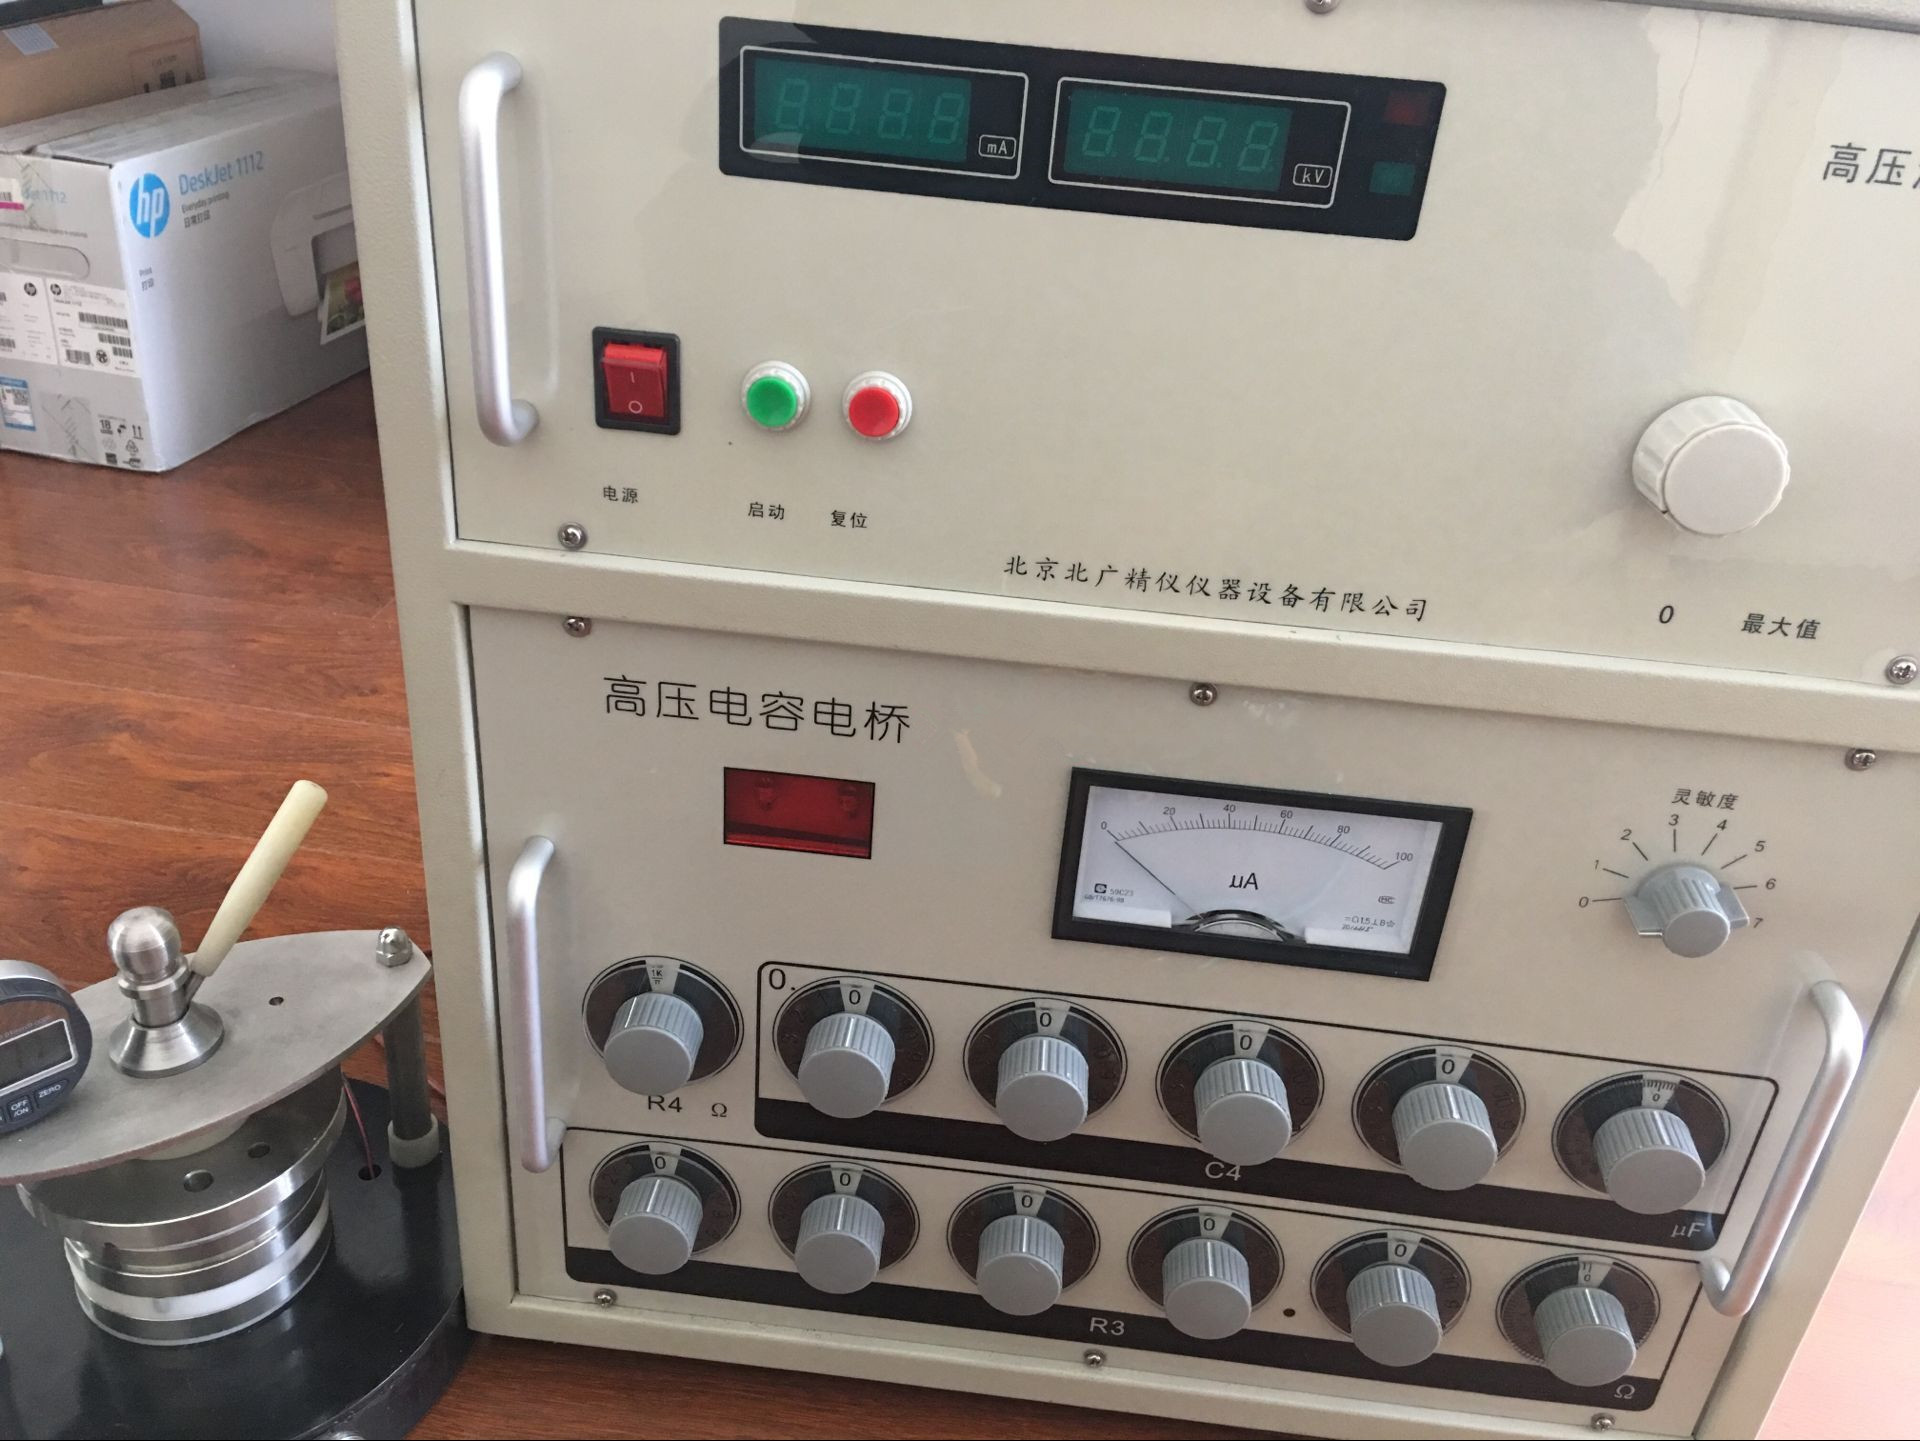 工频介电常数介质损耗测试仪北京北广精仪仪器设备有限公司